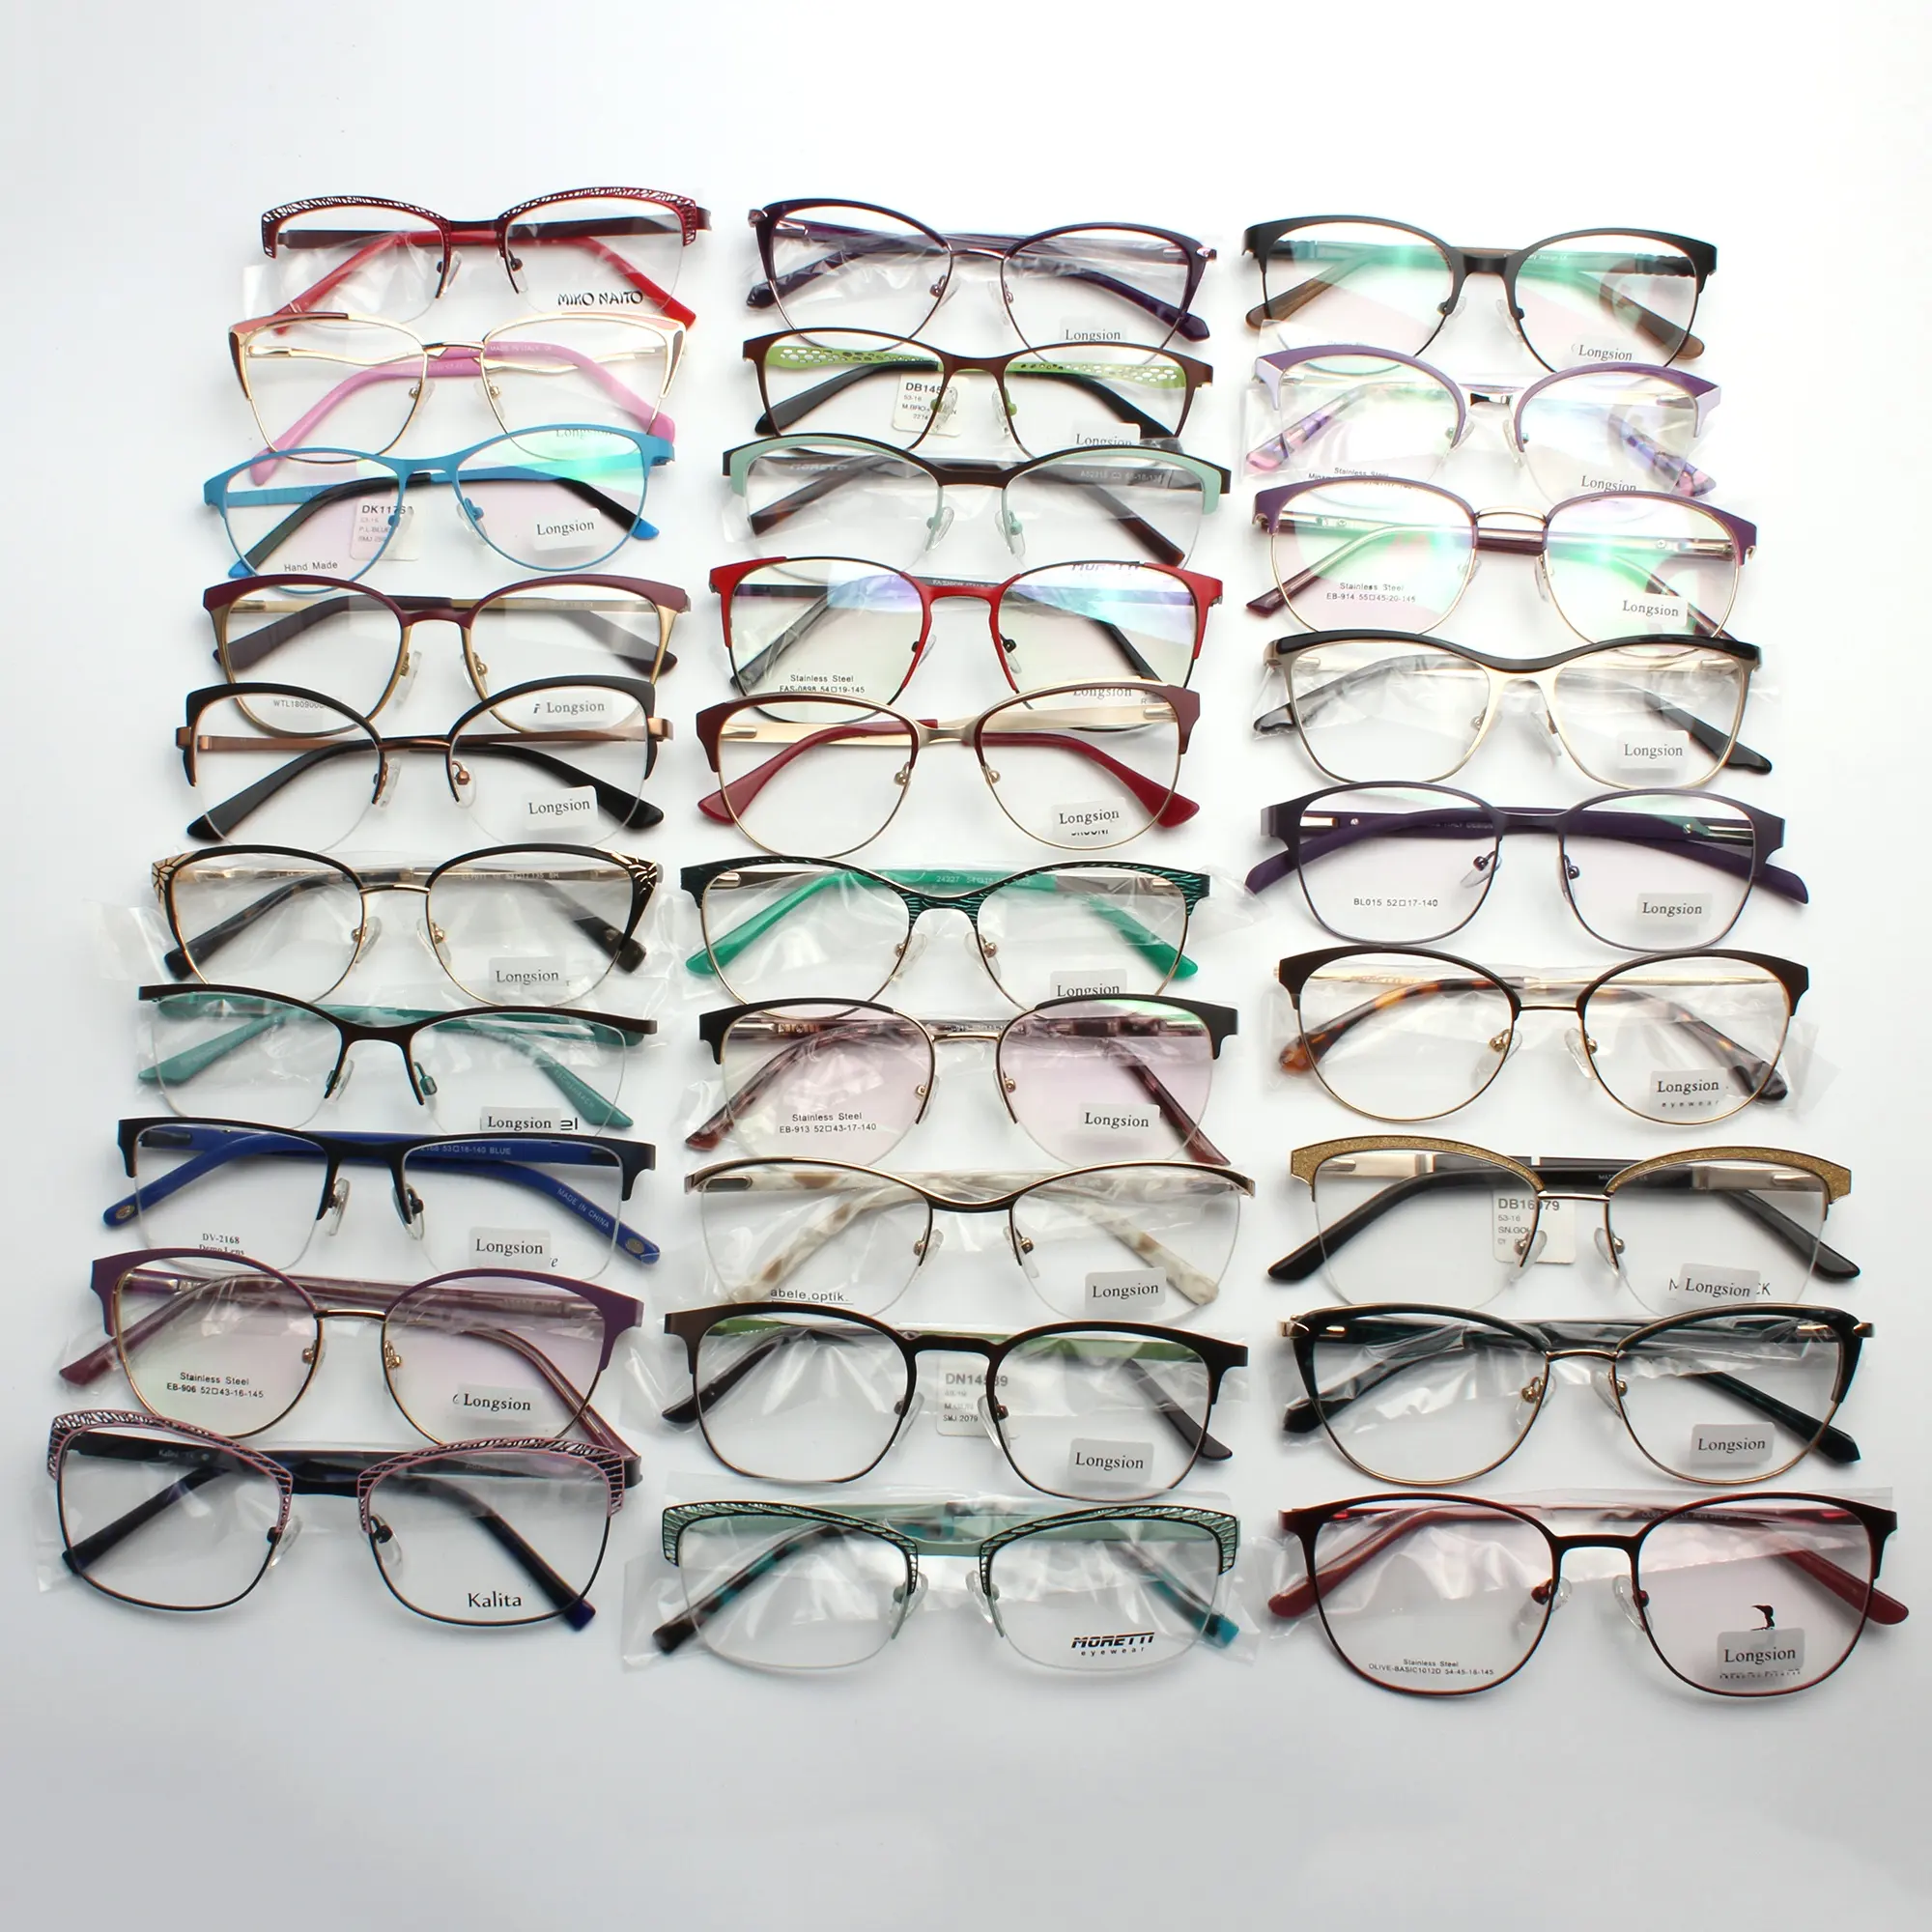 Pas cher prix assorti lunettes cadre métal lunettes cadre stock prêt optique lunettes designer lunettes montures de lunettes pour magasin